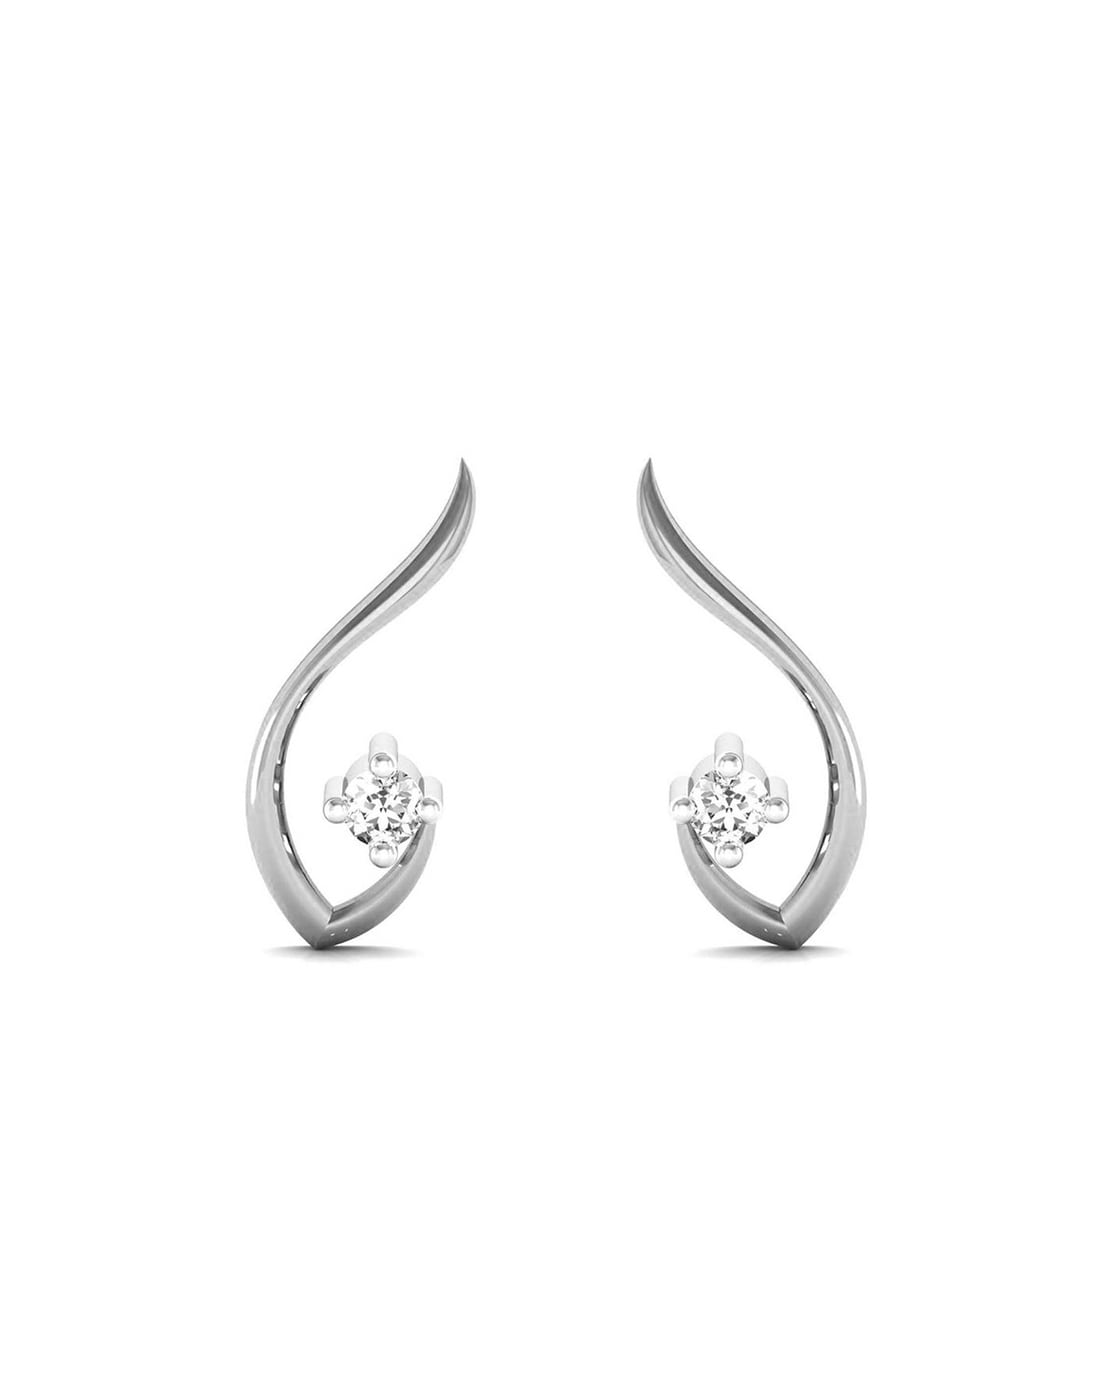 Share more than 81 white gold earrings - 3tdesign.edu.vn